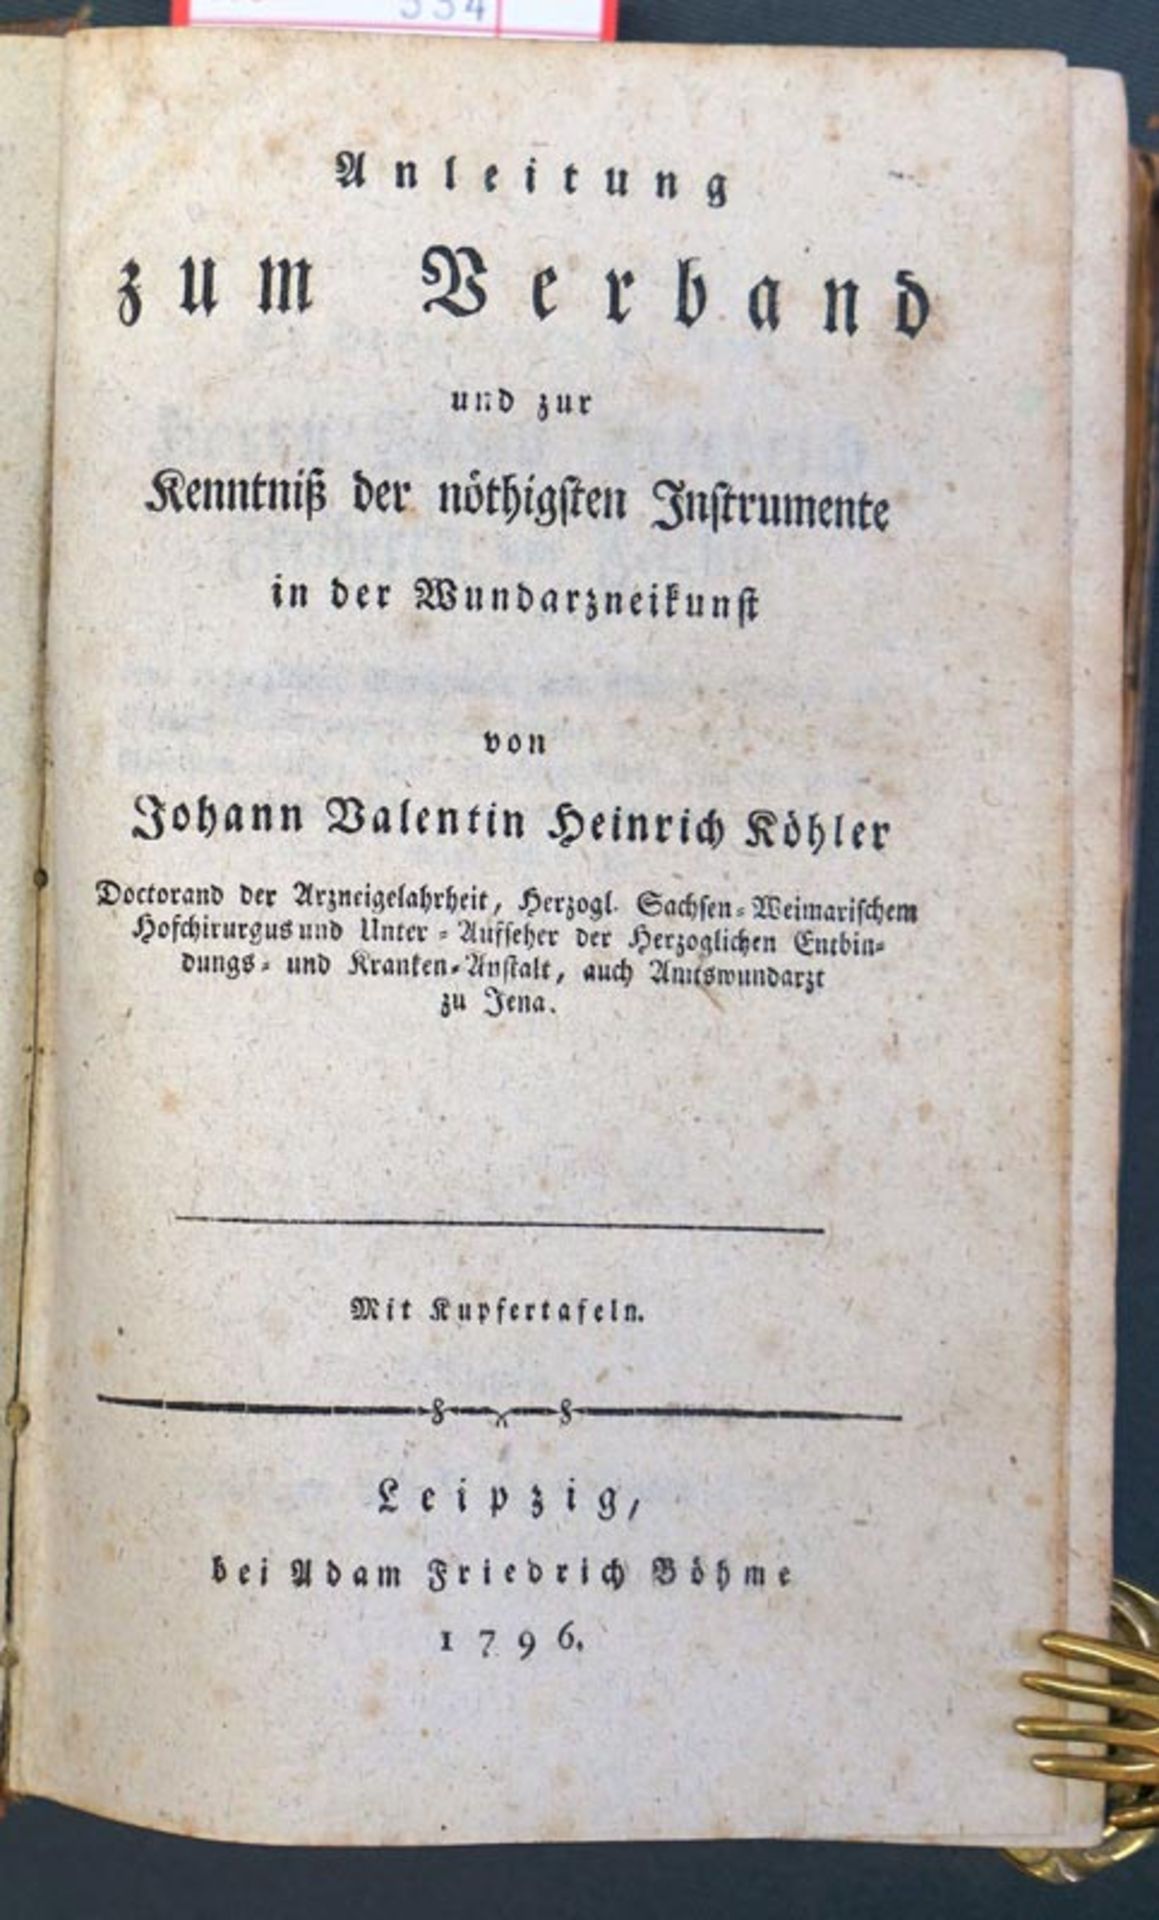 Köhler, Johann Valentin Heinrich: Anleitung zum Verband und zur Kentniß der nöthigsten Instrumente